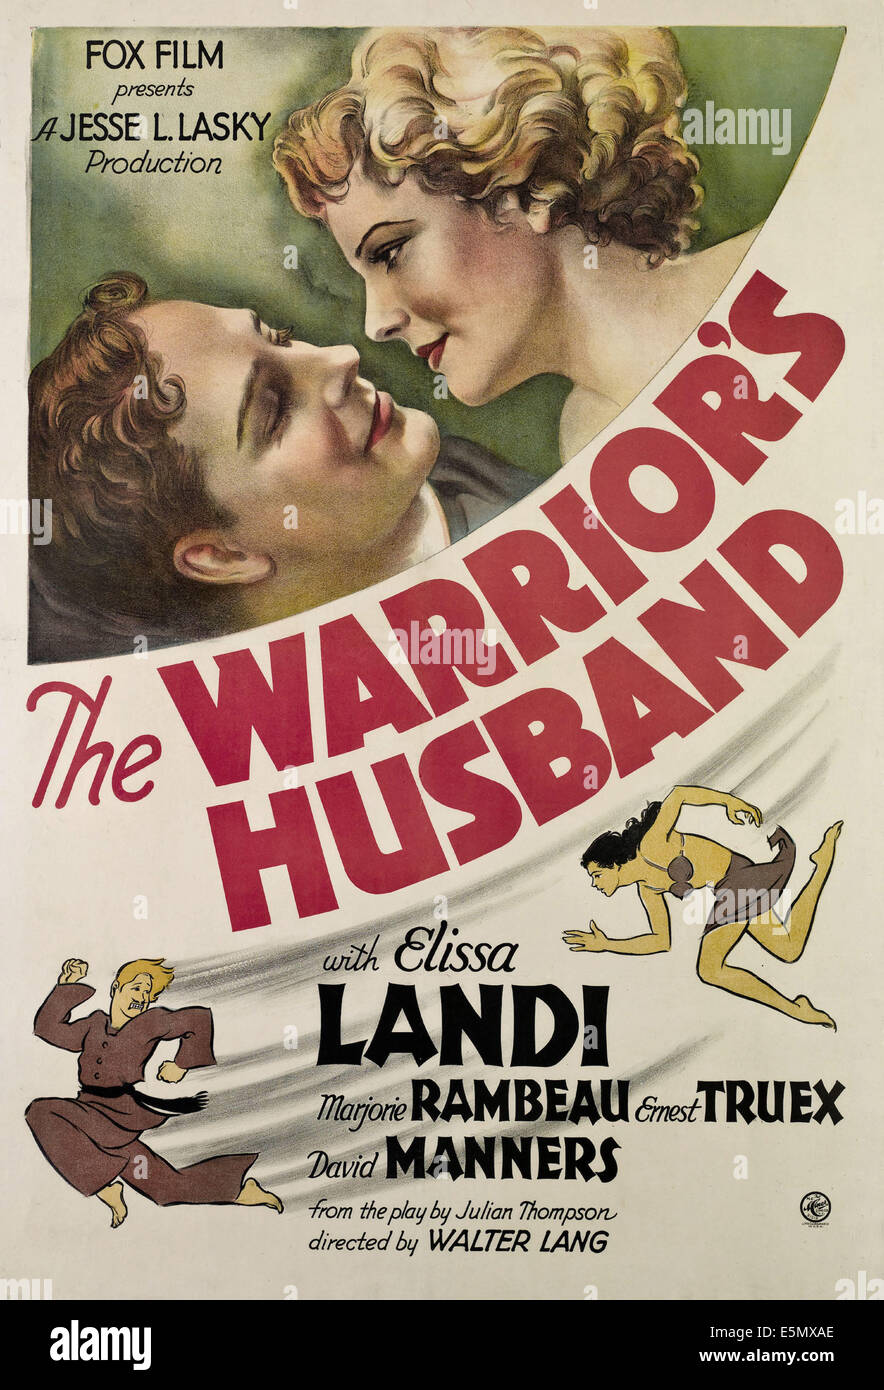 La Warrior's marito, da sinistra, David maniere, Elissa Landi, 1933, TM e copyright ©XX Century Fox Film Corp. Tutti i diritti Foto Stock